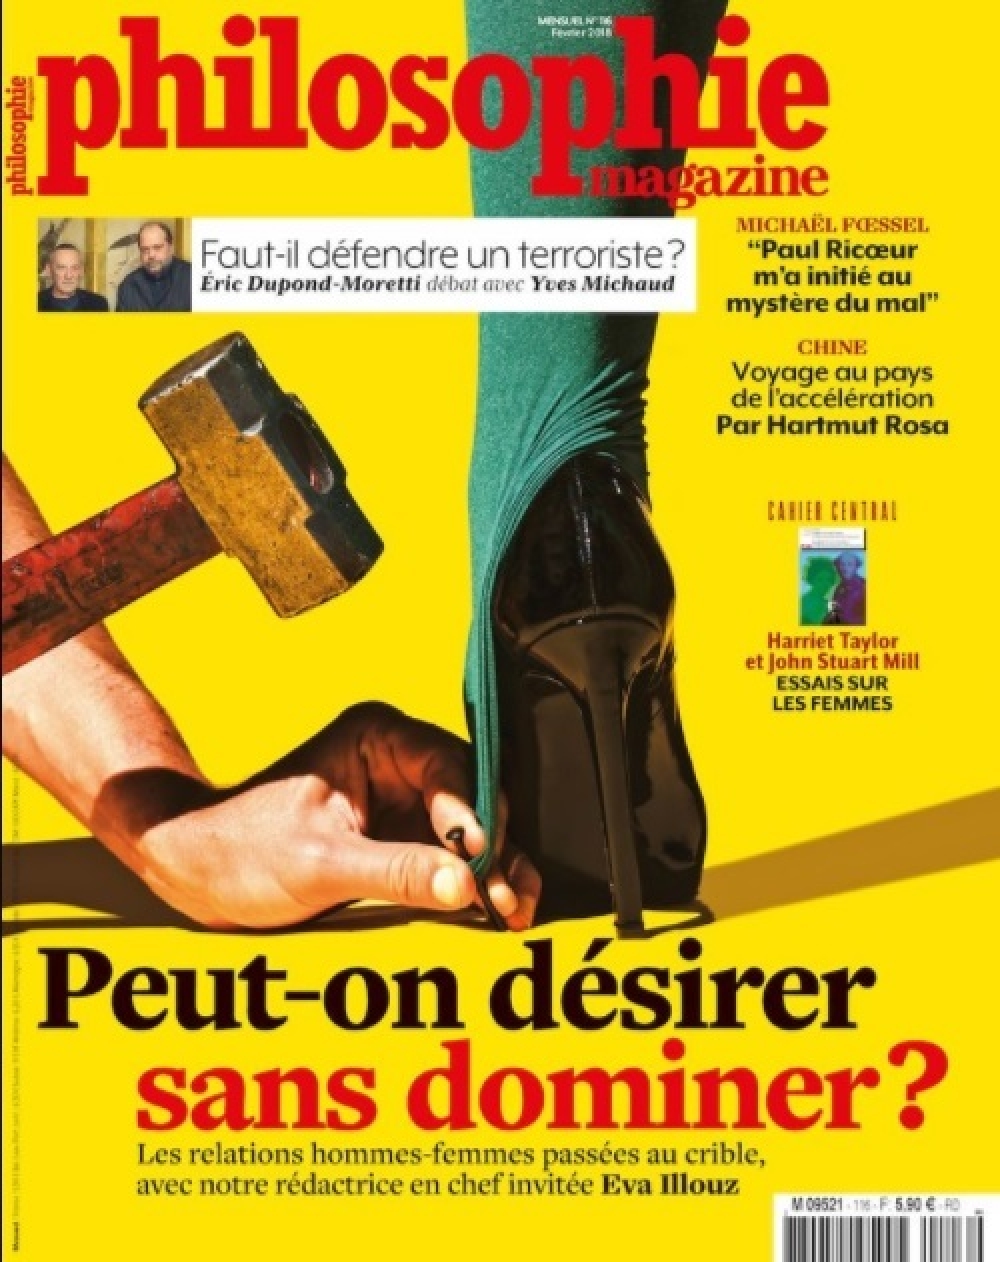 法國雜誌的後續對#METOO 運動多有討論。（圖片取自女人迷）